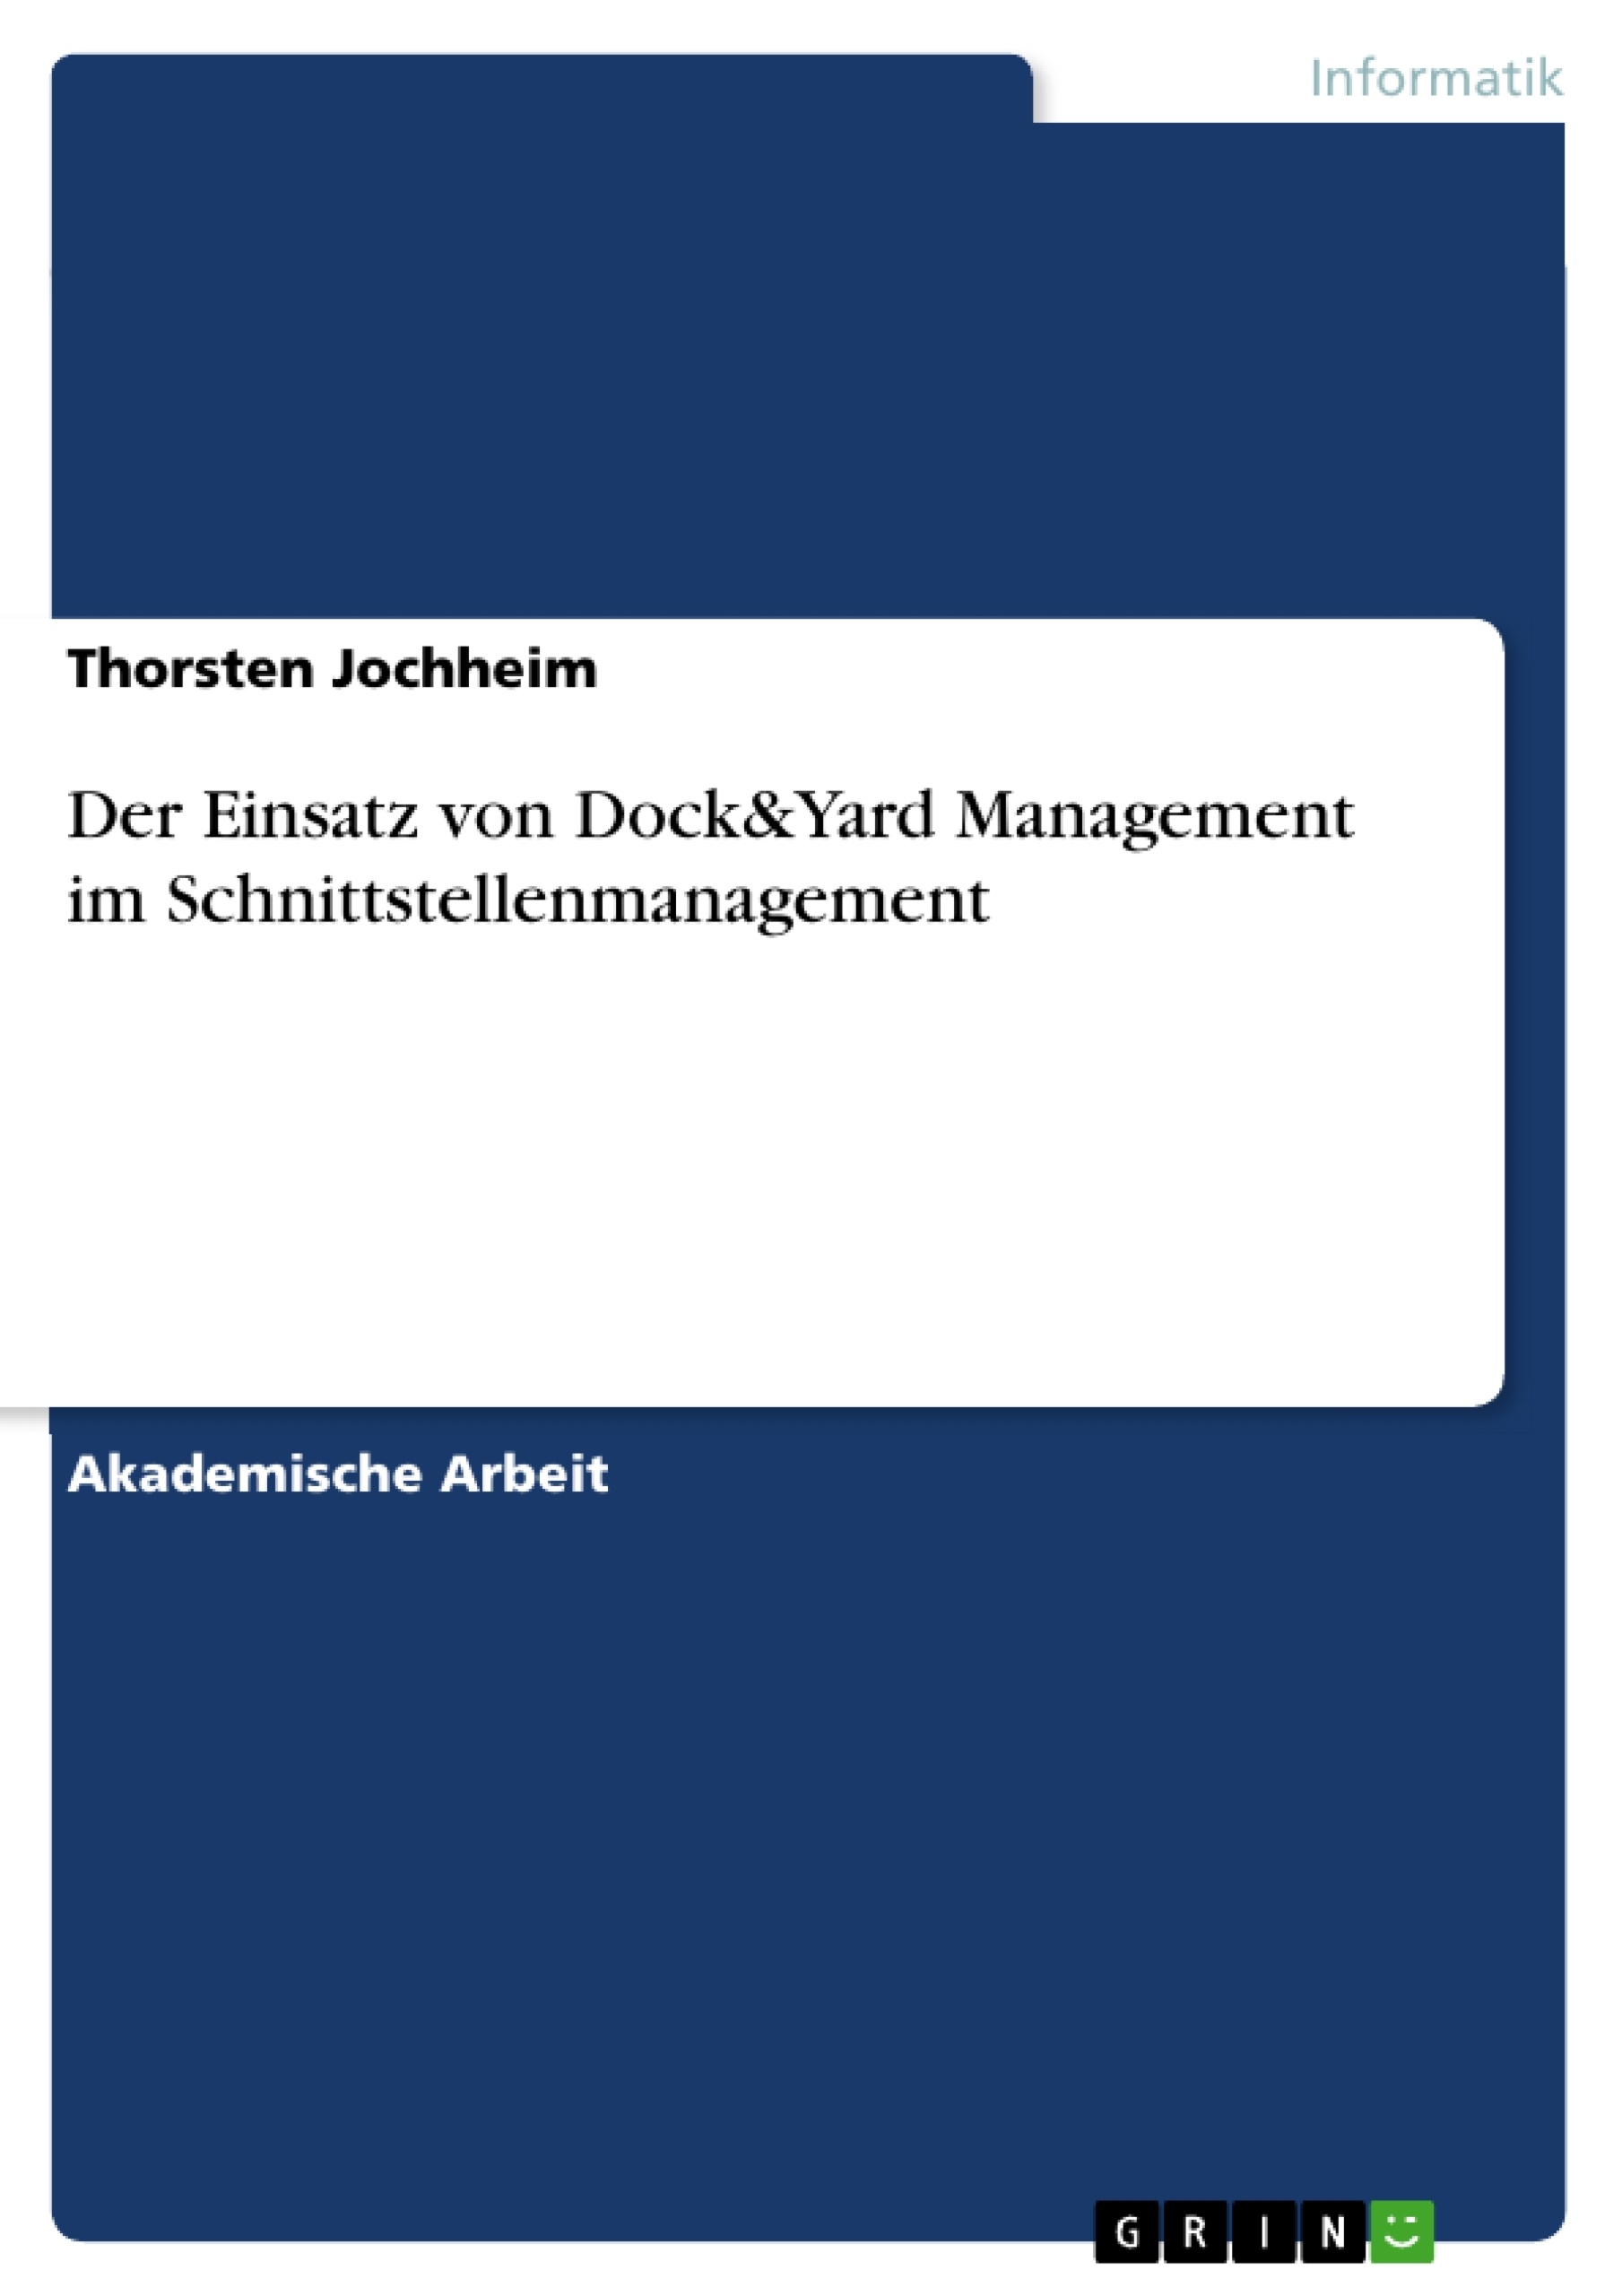 Título: Der Einsatz von Dock&Yard Management im Schnittstellenmanagement